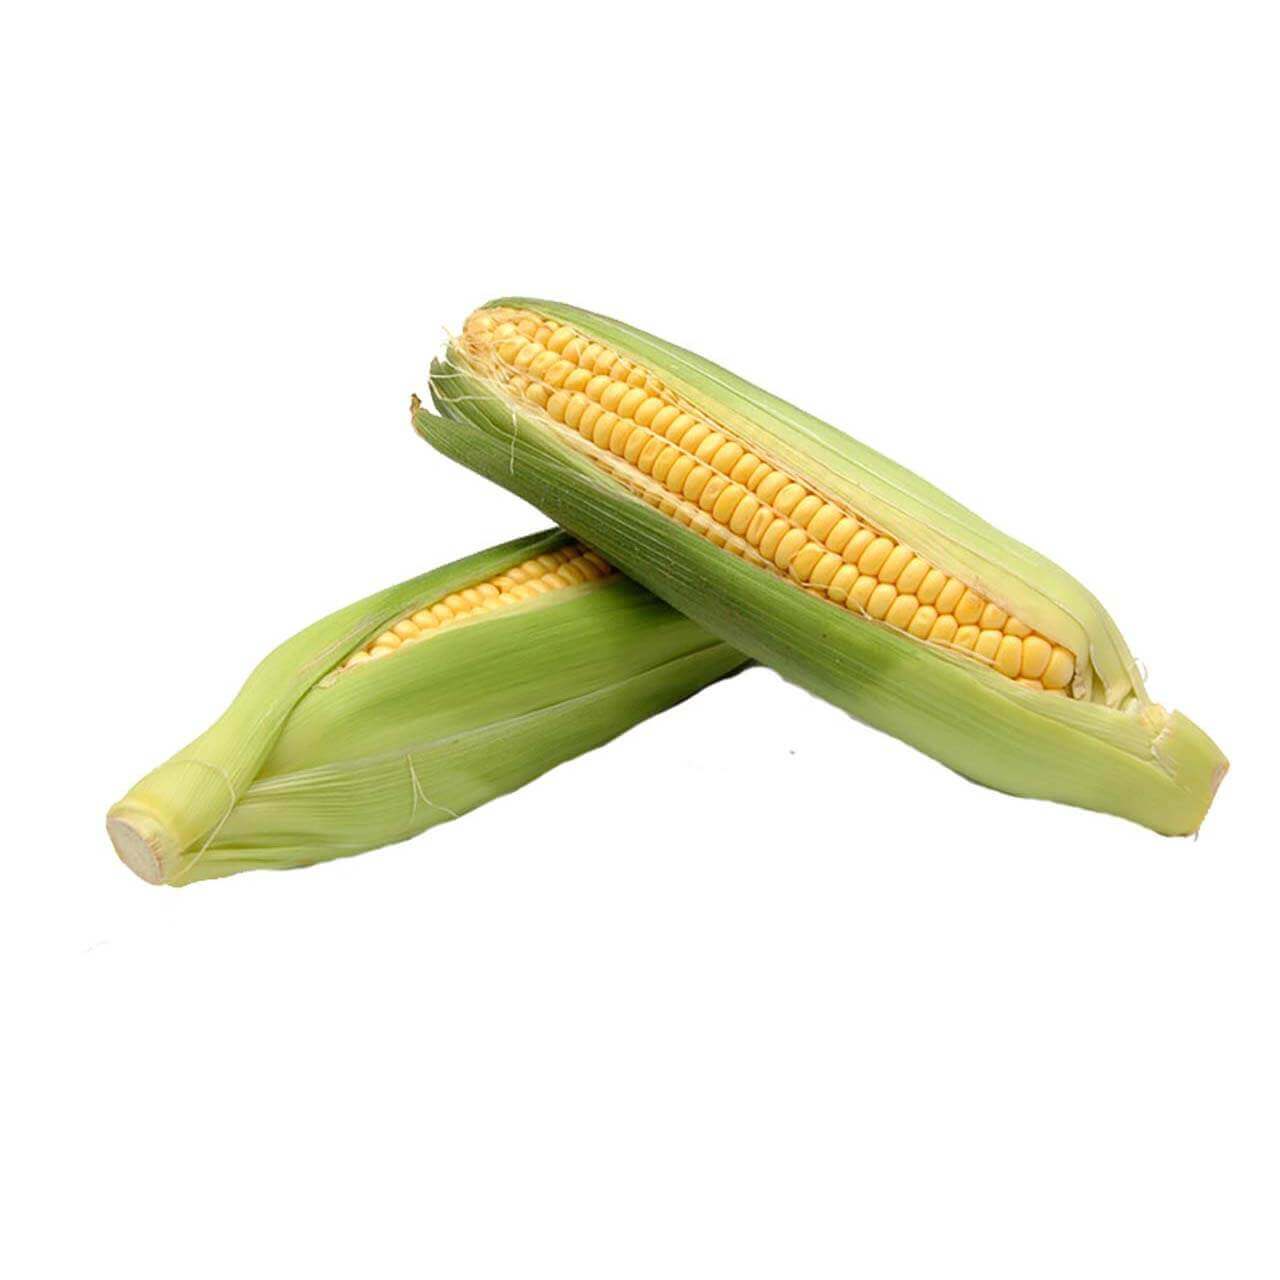 Sweet Corn - Each Ear